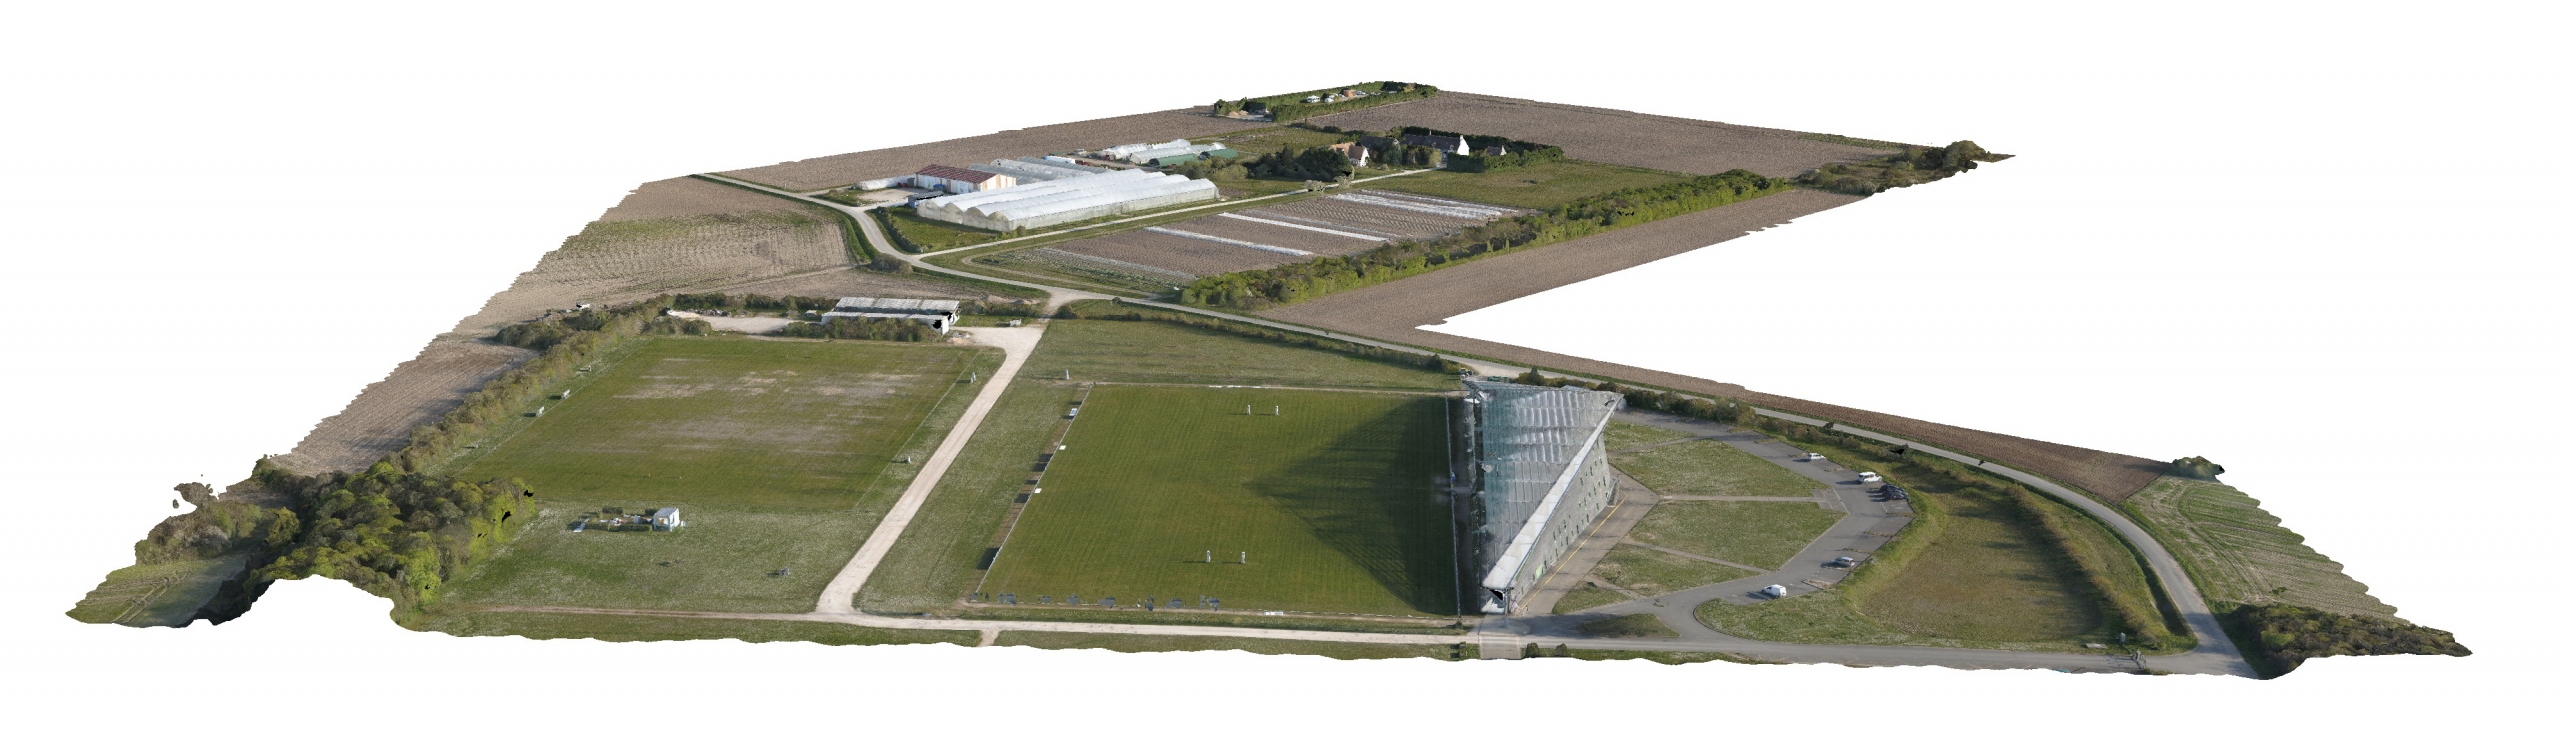 Exemple de modélisation avec un nIveau de détail 2 réalisées uniquement par drone sur 75 hectares